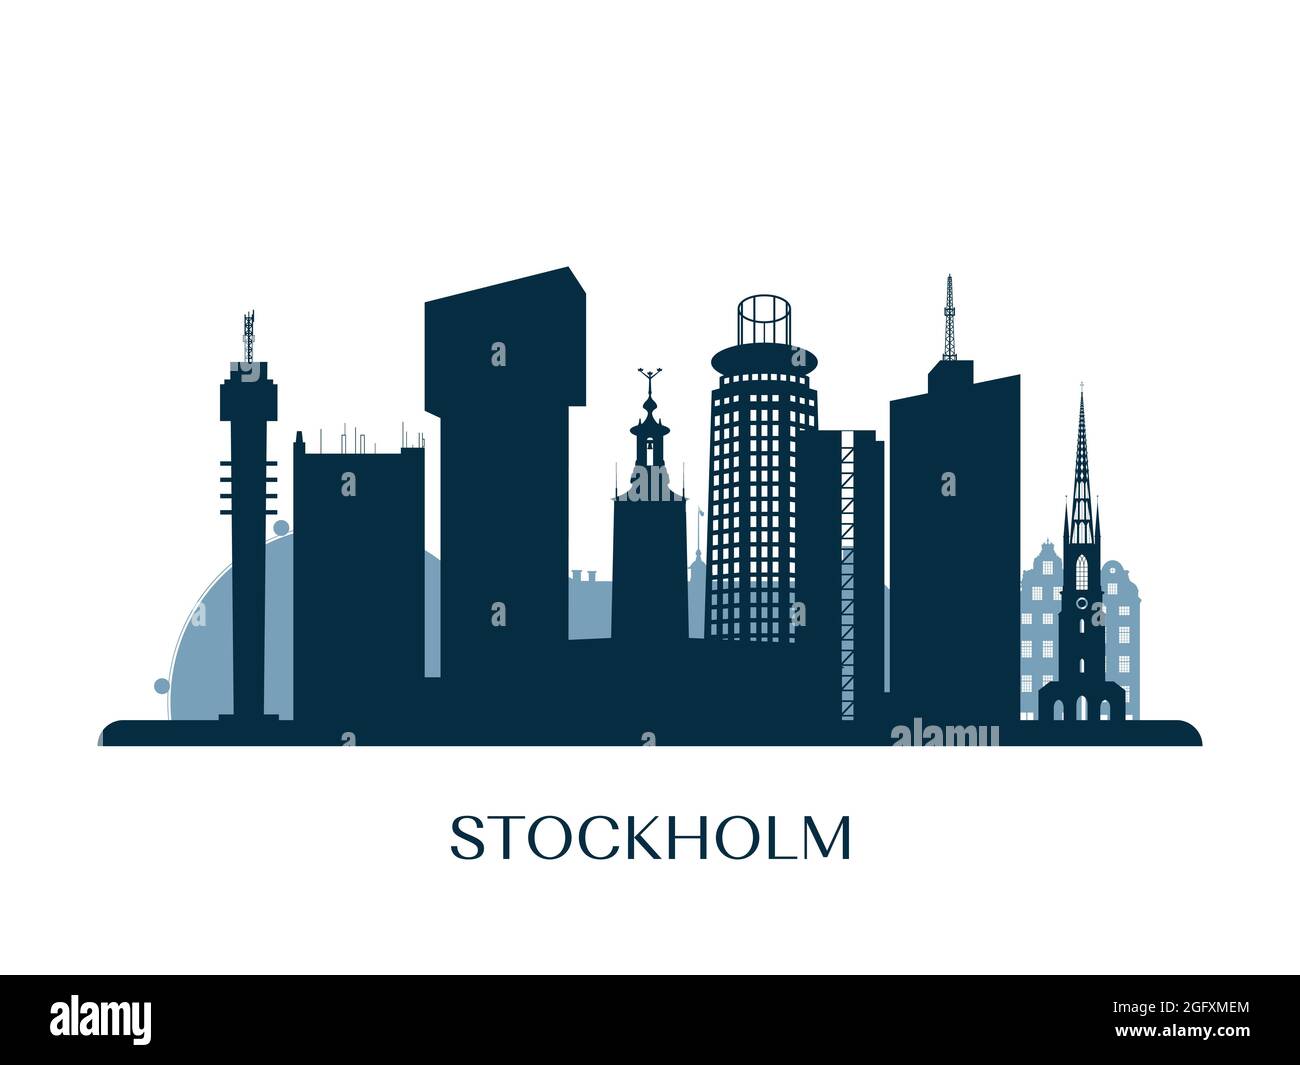 Stockholm skyline, monochrome silhouette. Vector illustration. Stock Vector